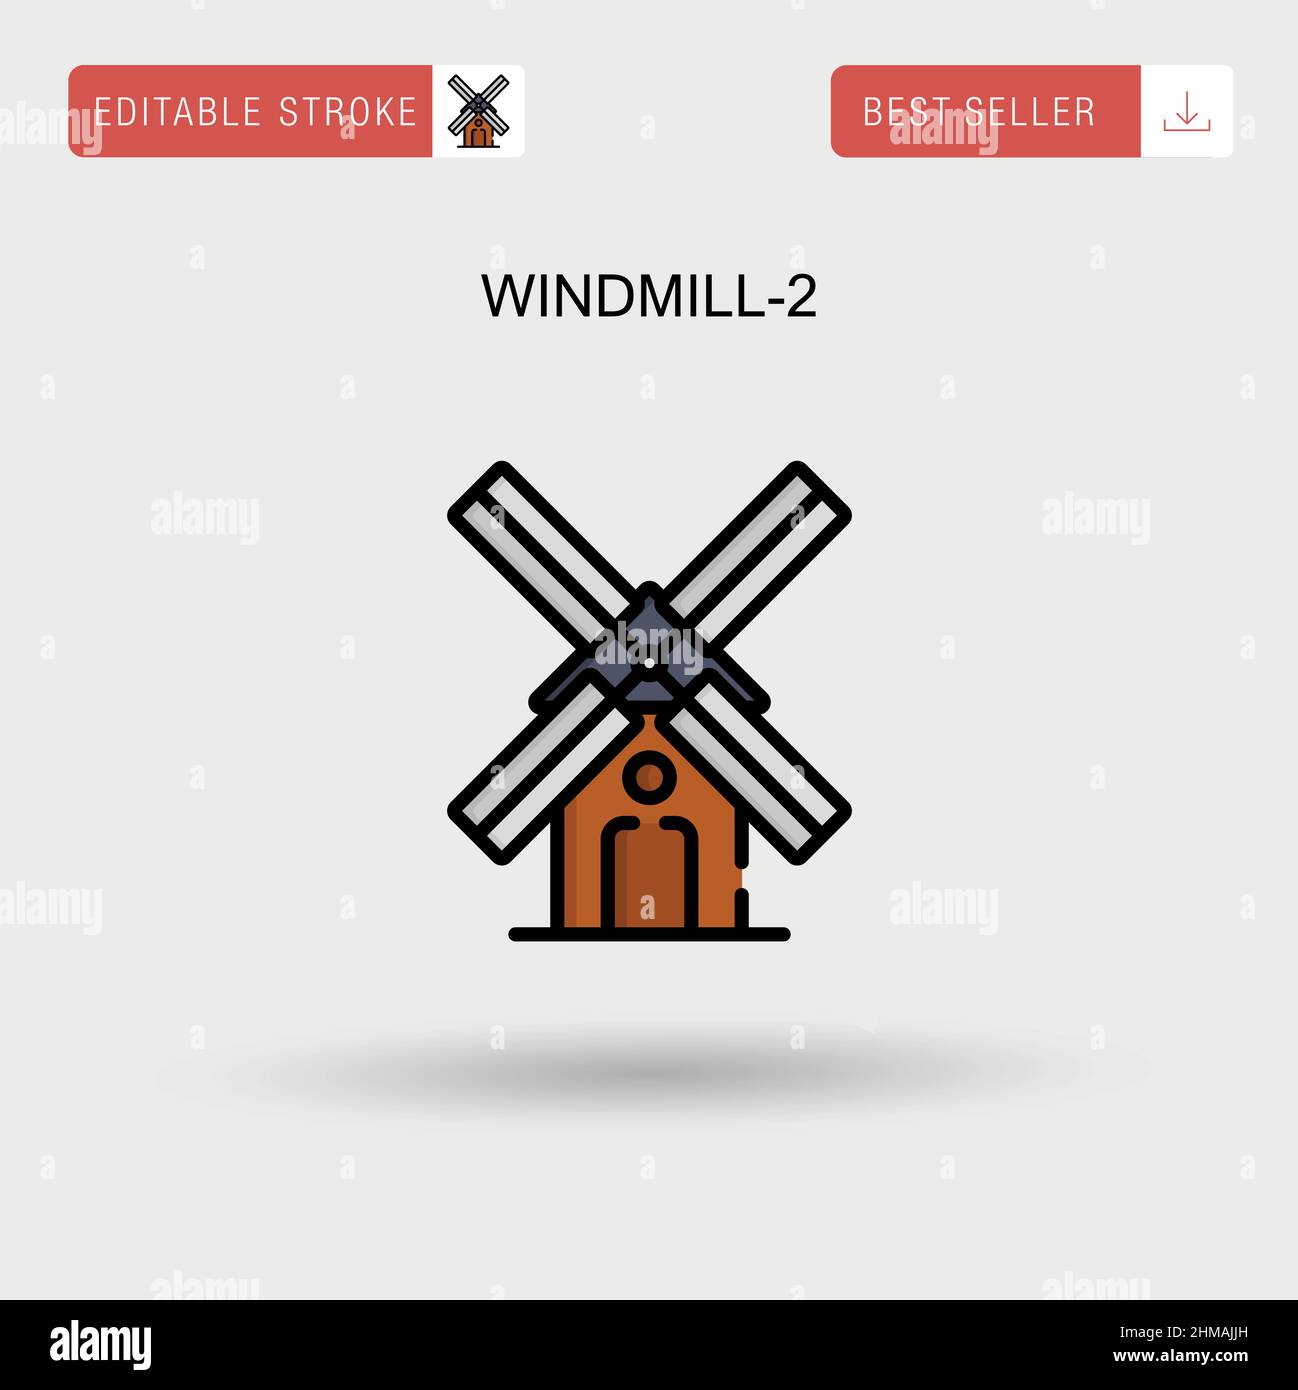 Windmill-2 einfaches Vektorsymbol. Stock Vektor